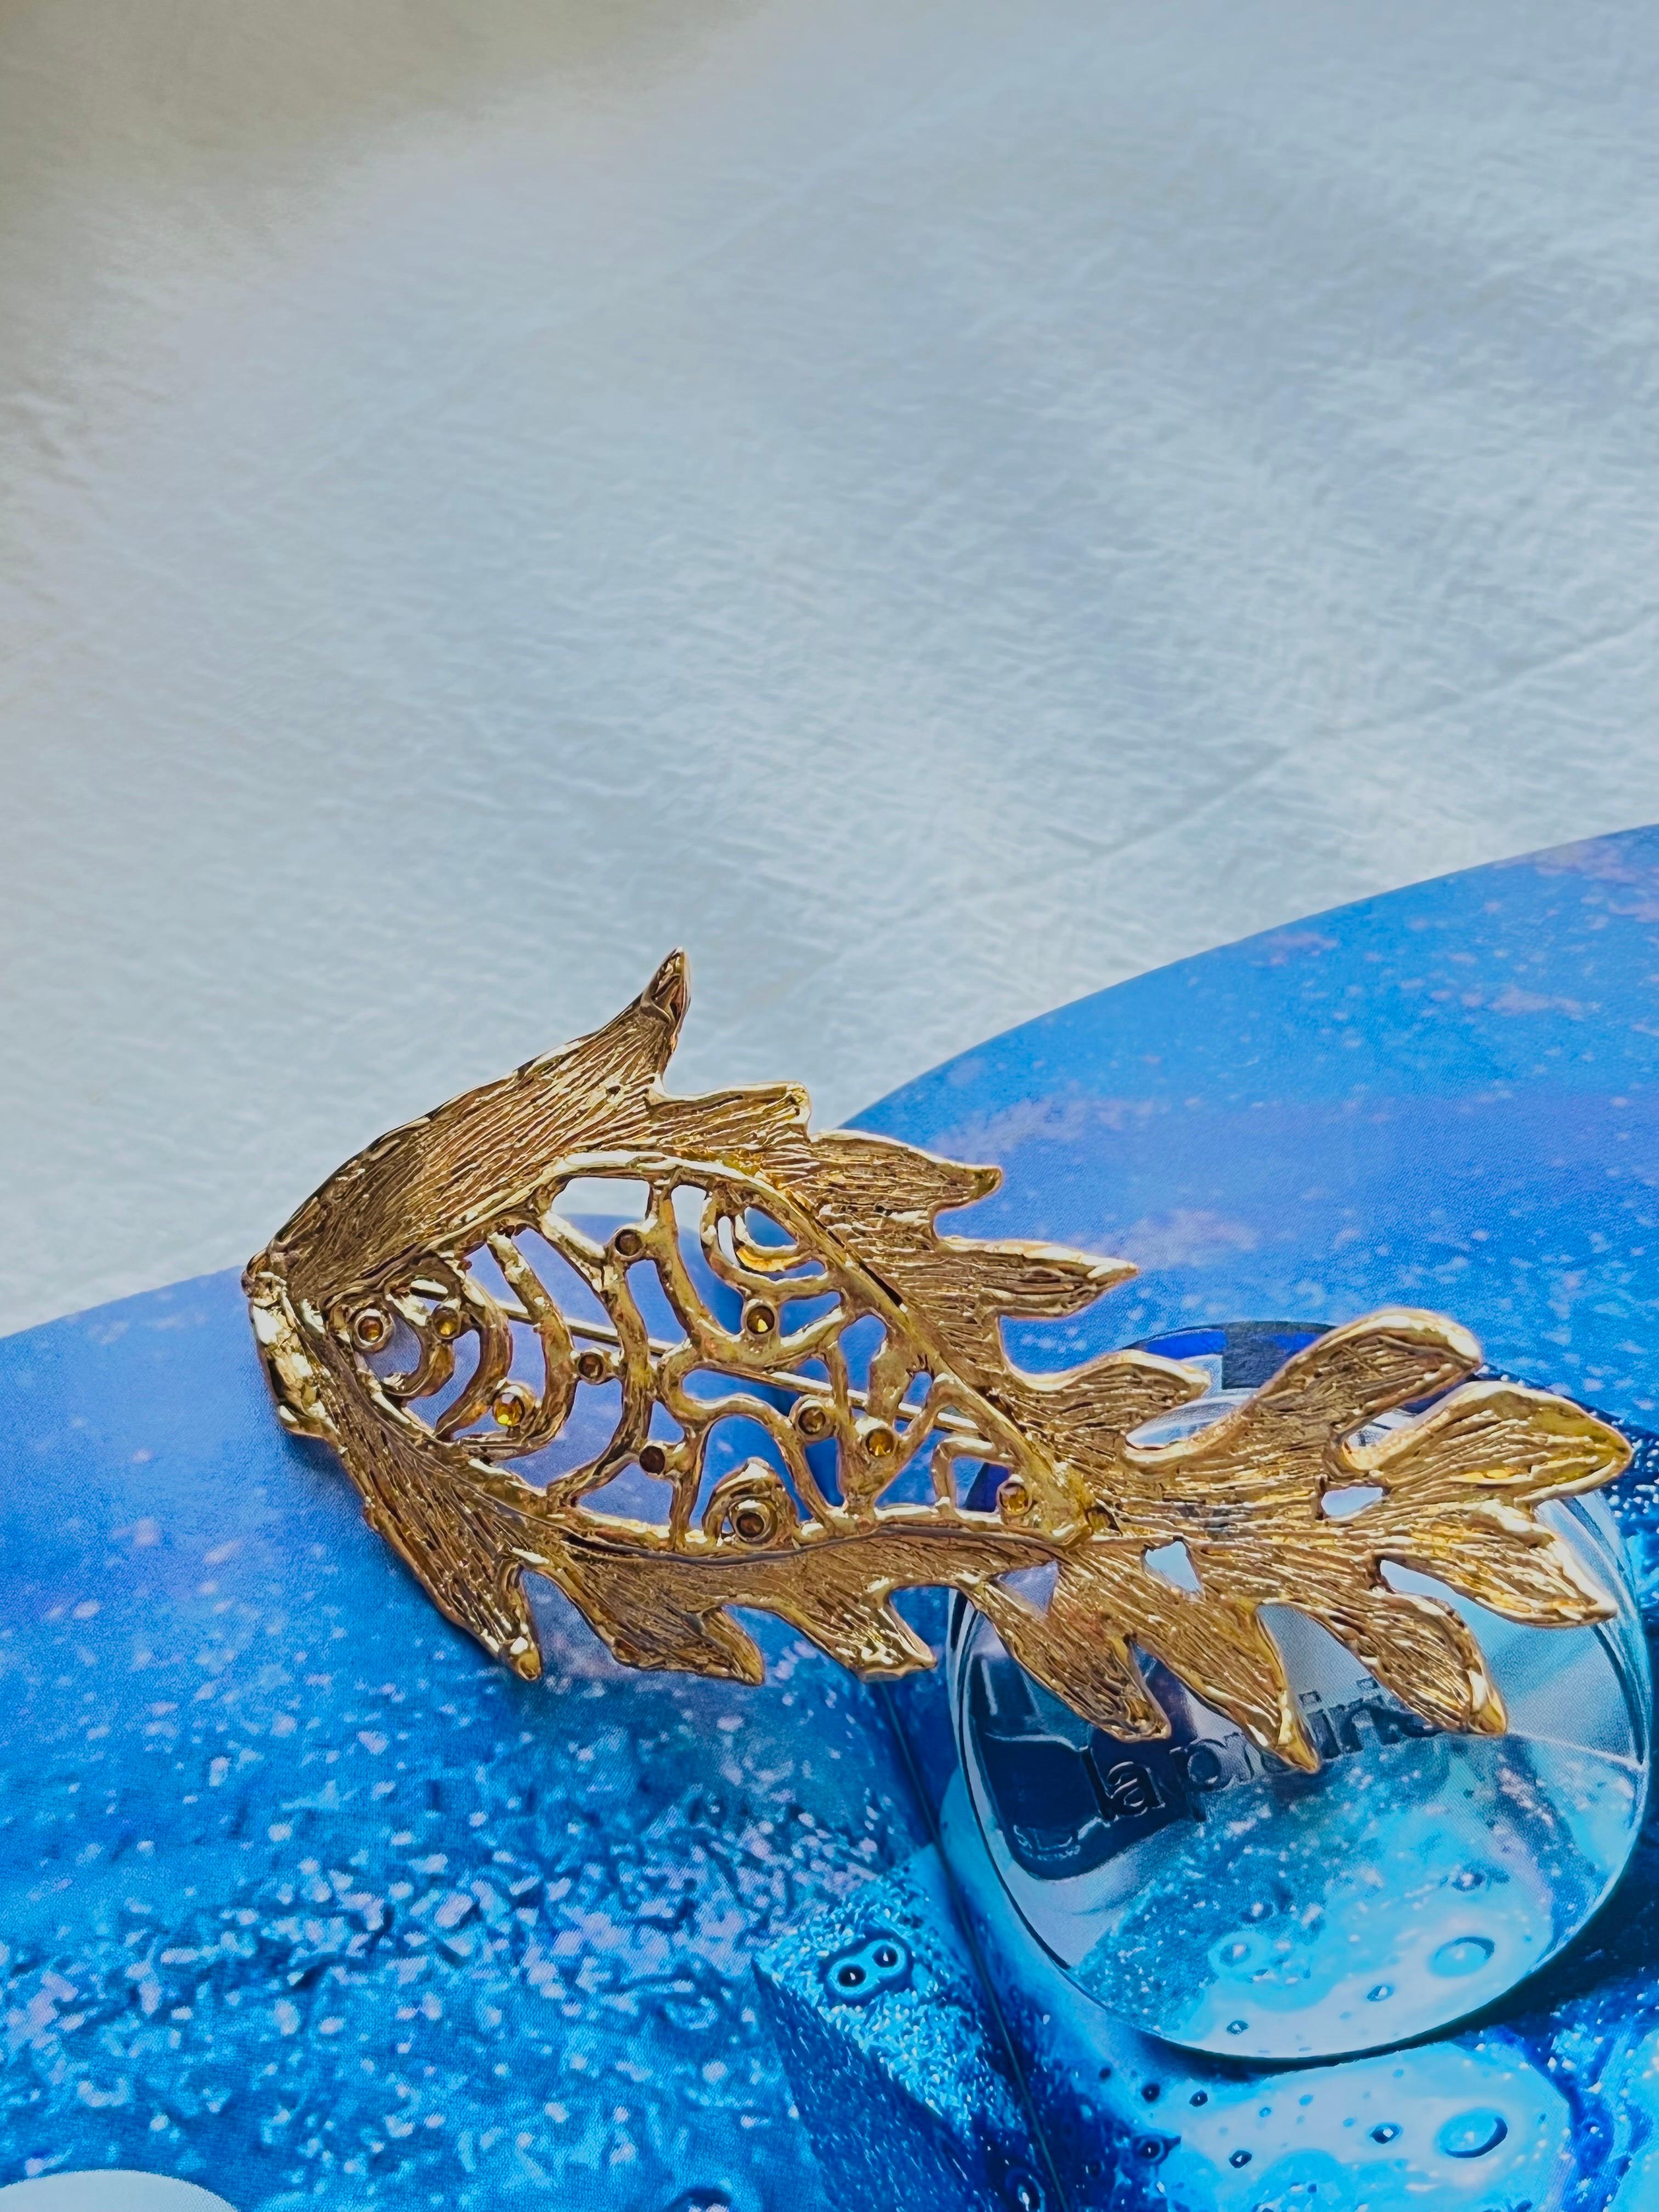 Yves Saint Laurent YSL Vintage Vivid Long Fish Gelbe Kristalle Durchbrochene Brosche, vergoldet

Sehr guter Zustand, leichte Kratzer oder Farbverluste, kaum spürbar. Selten zu finden.

Signiert auf der Rückseite Yves Saint Laurent, Made in